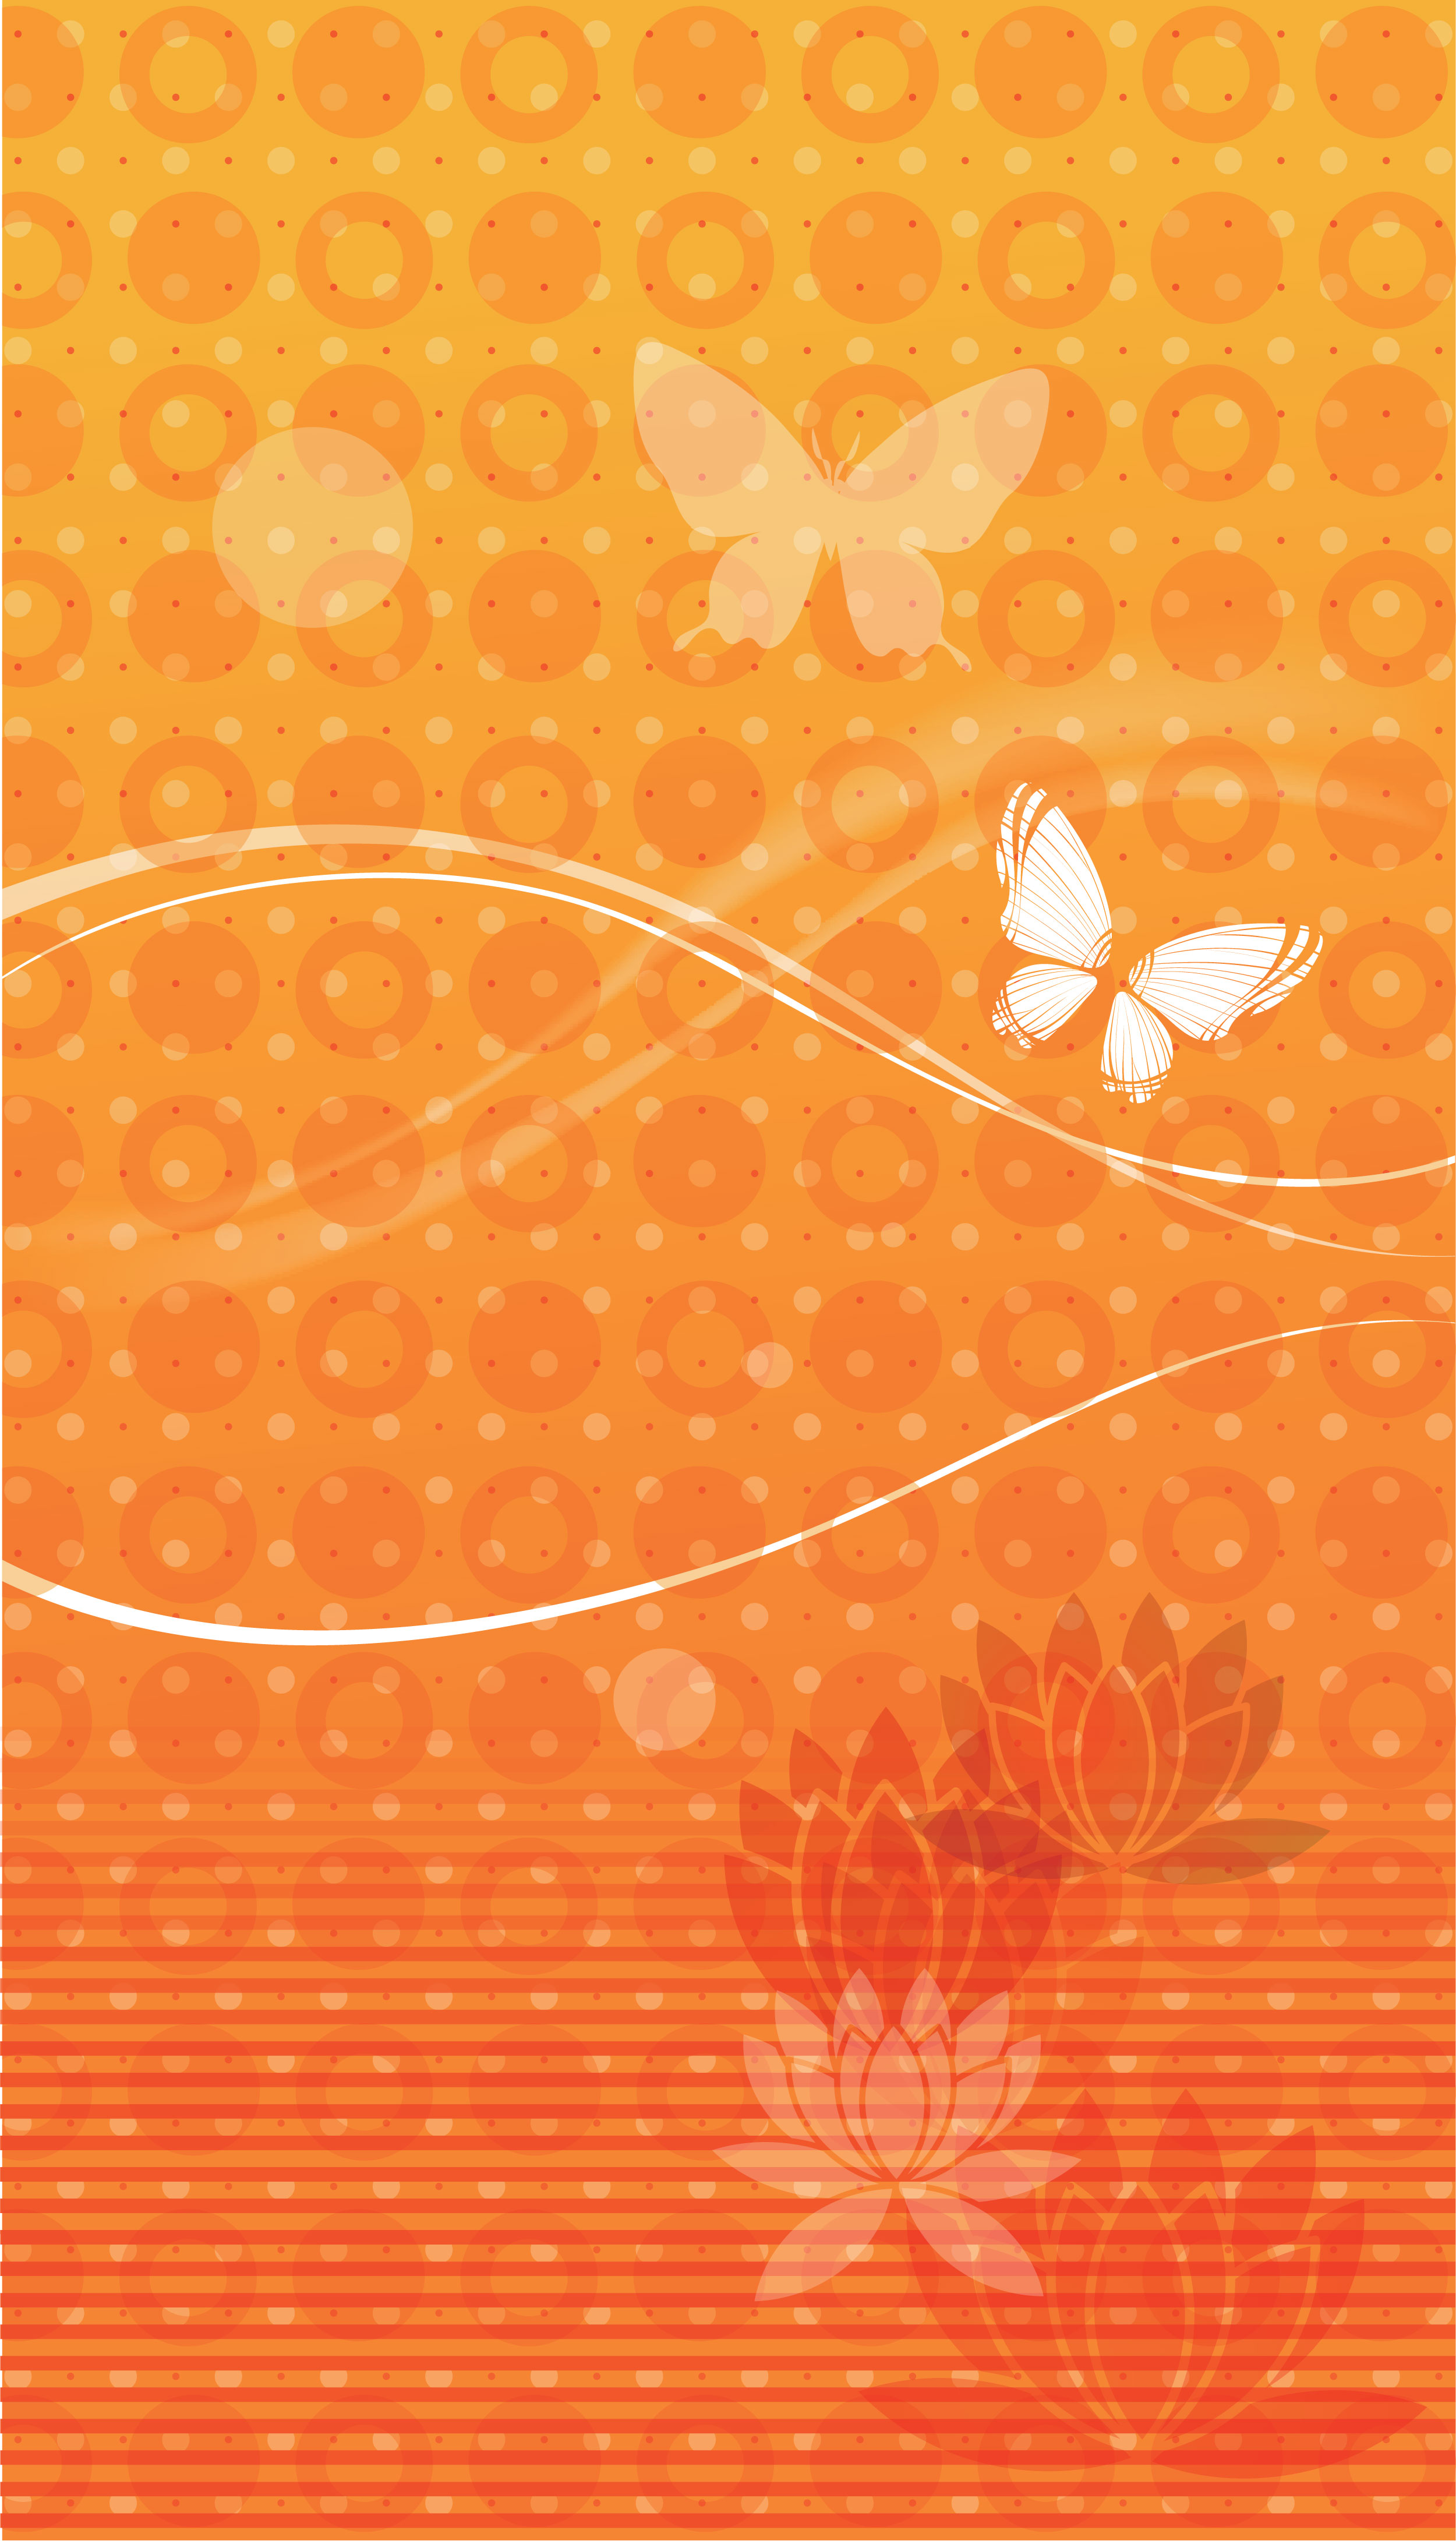 オレンジ色の花のイラスト フリー素材 壁紙 背景no 229 蝶 蓮華 オレンジ